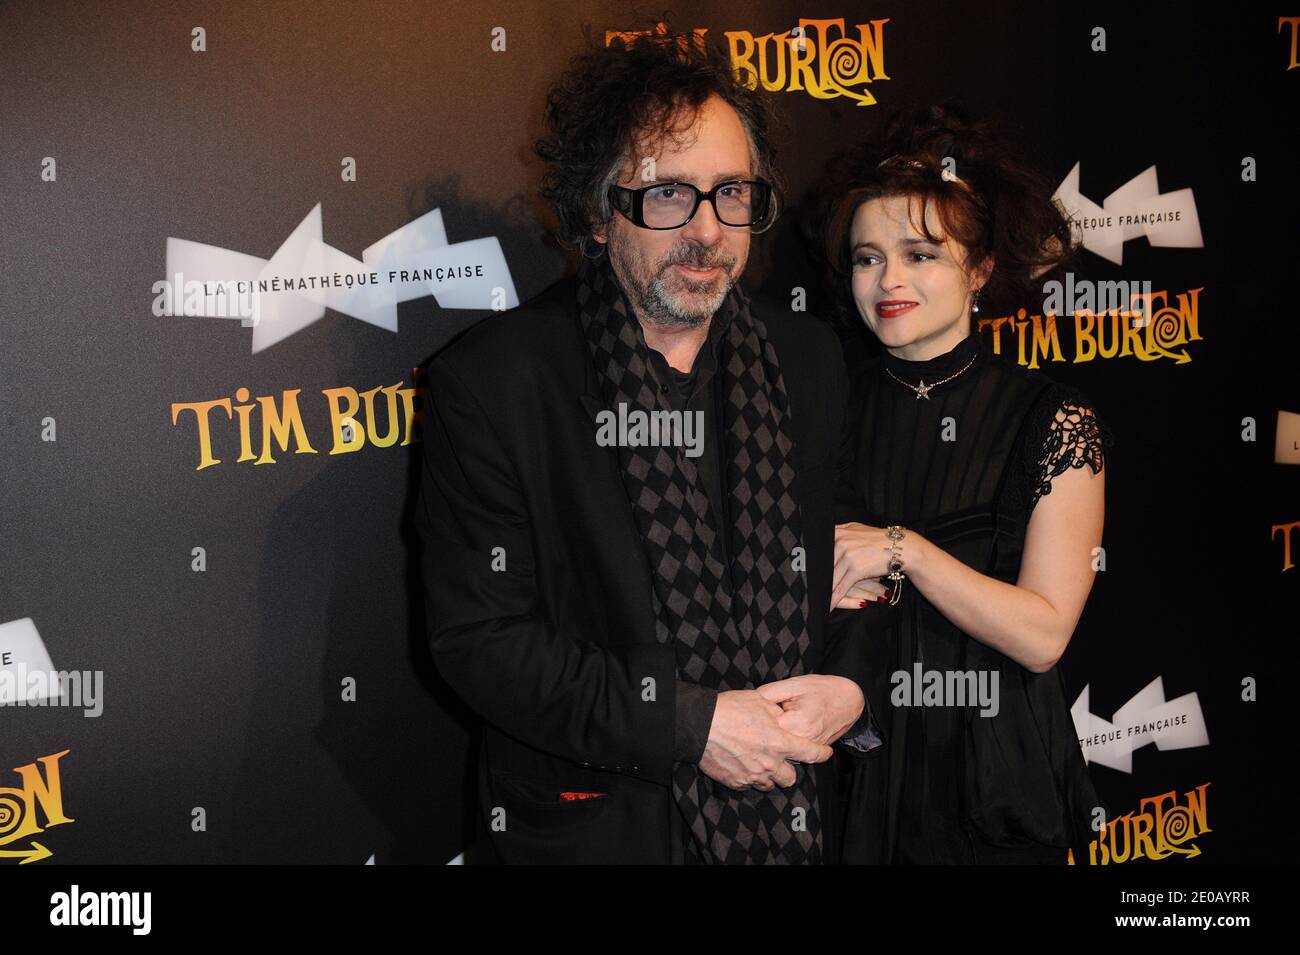 Tim Burton Helena Bonham Carter Fotos E Imagenes De Stock Pagina 7 Alamy